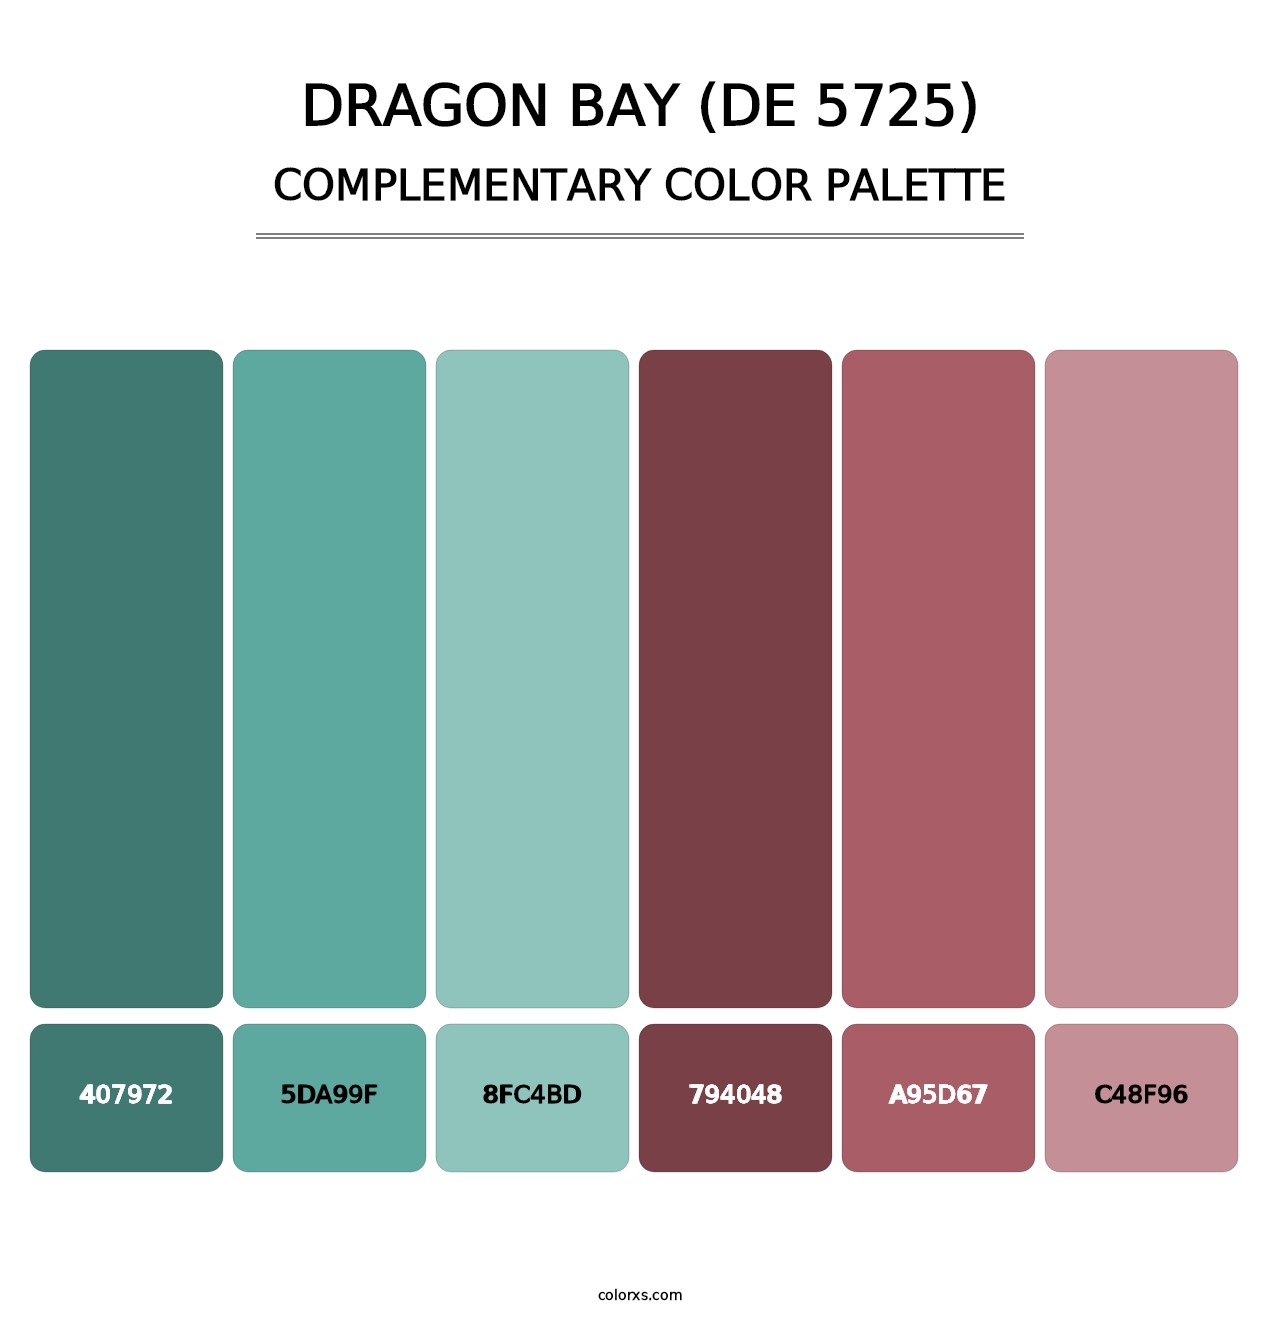 Dragon Bay (DE 5725) - Complementary Color Palette